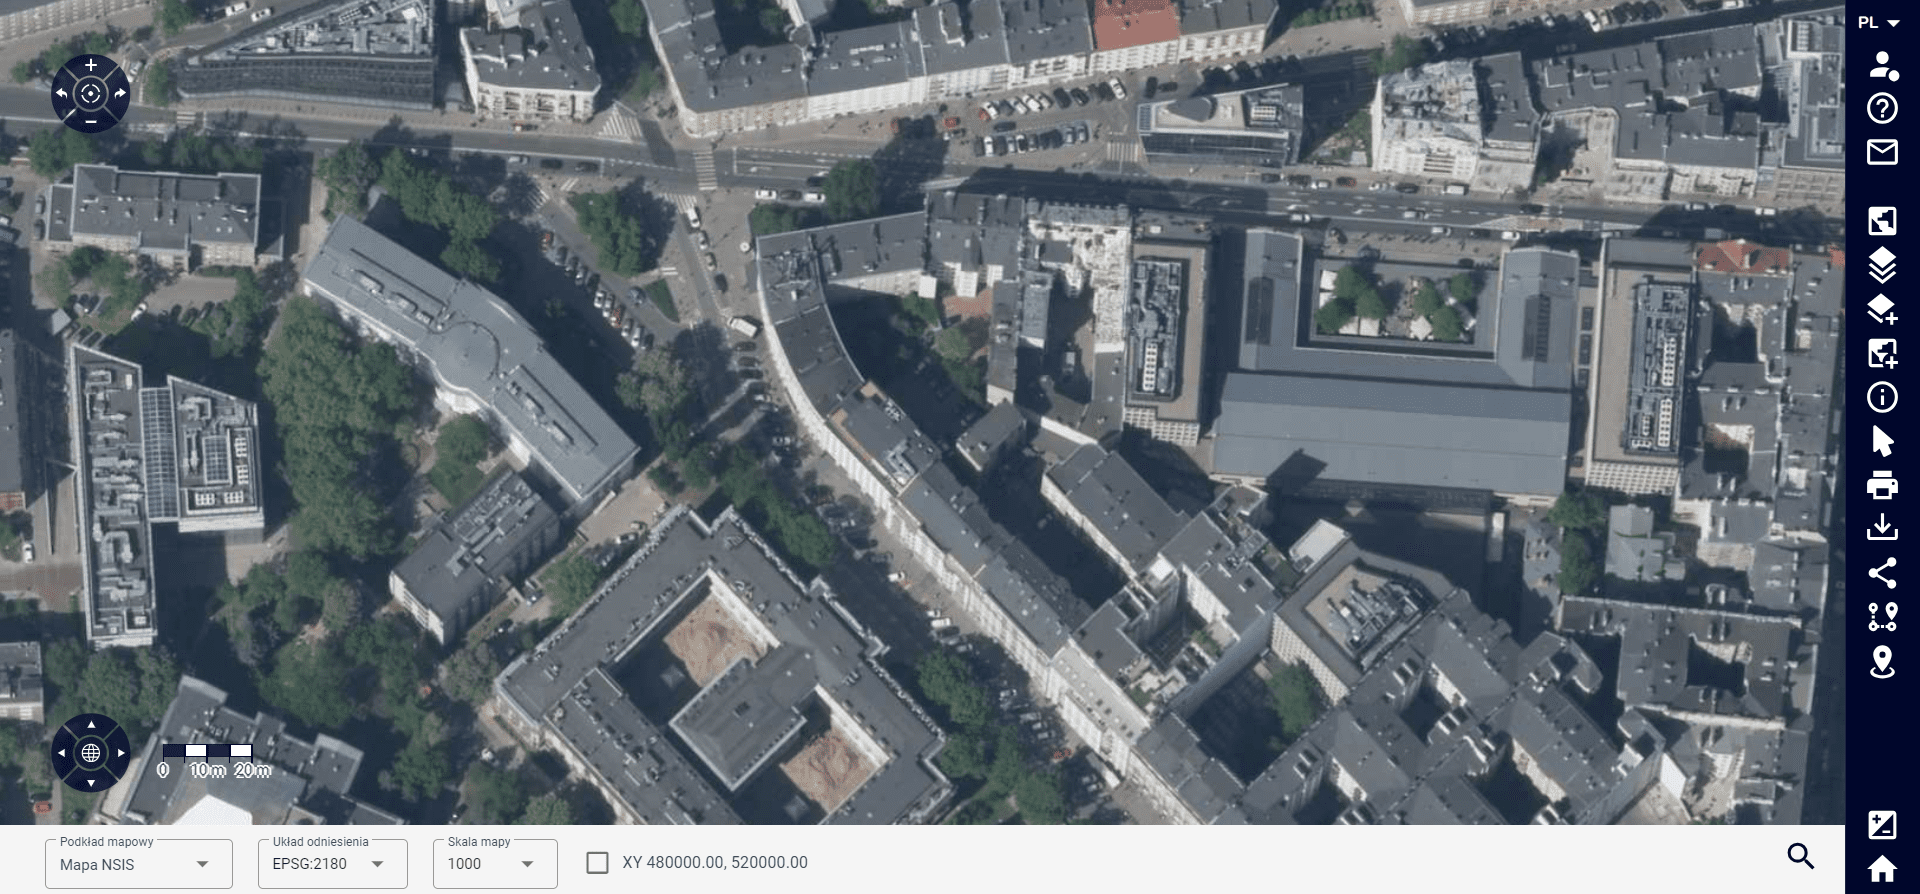 zrzut ekranu przedstawiający zdjęcie satelitarne okolic ulicy Noakowskiego i Koszykowej w Warszawie